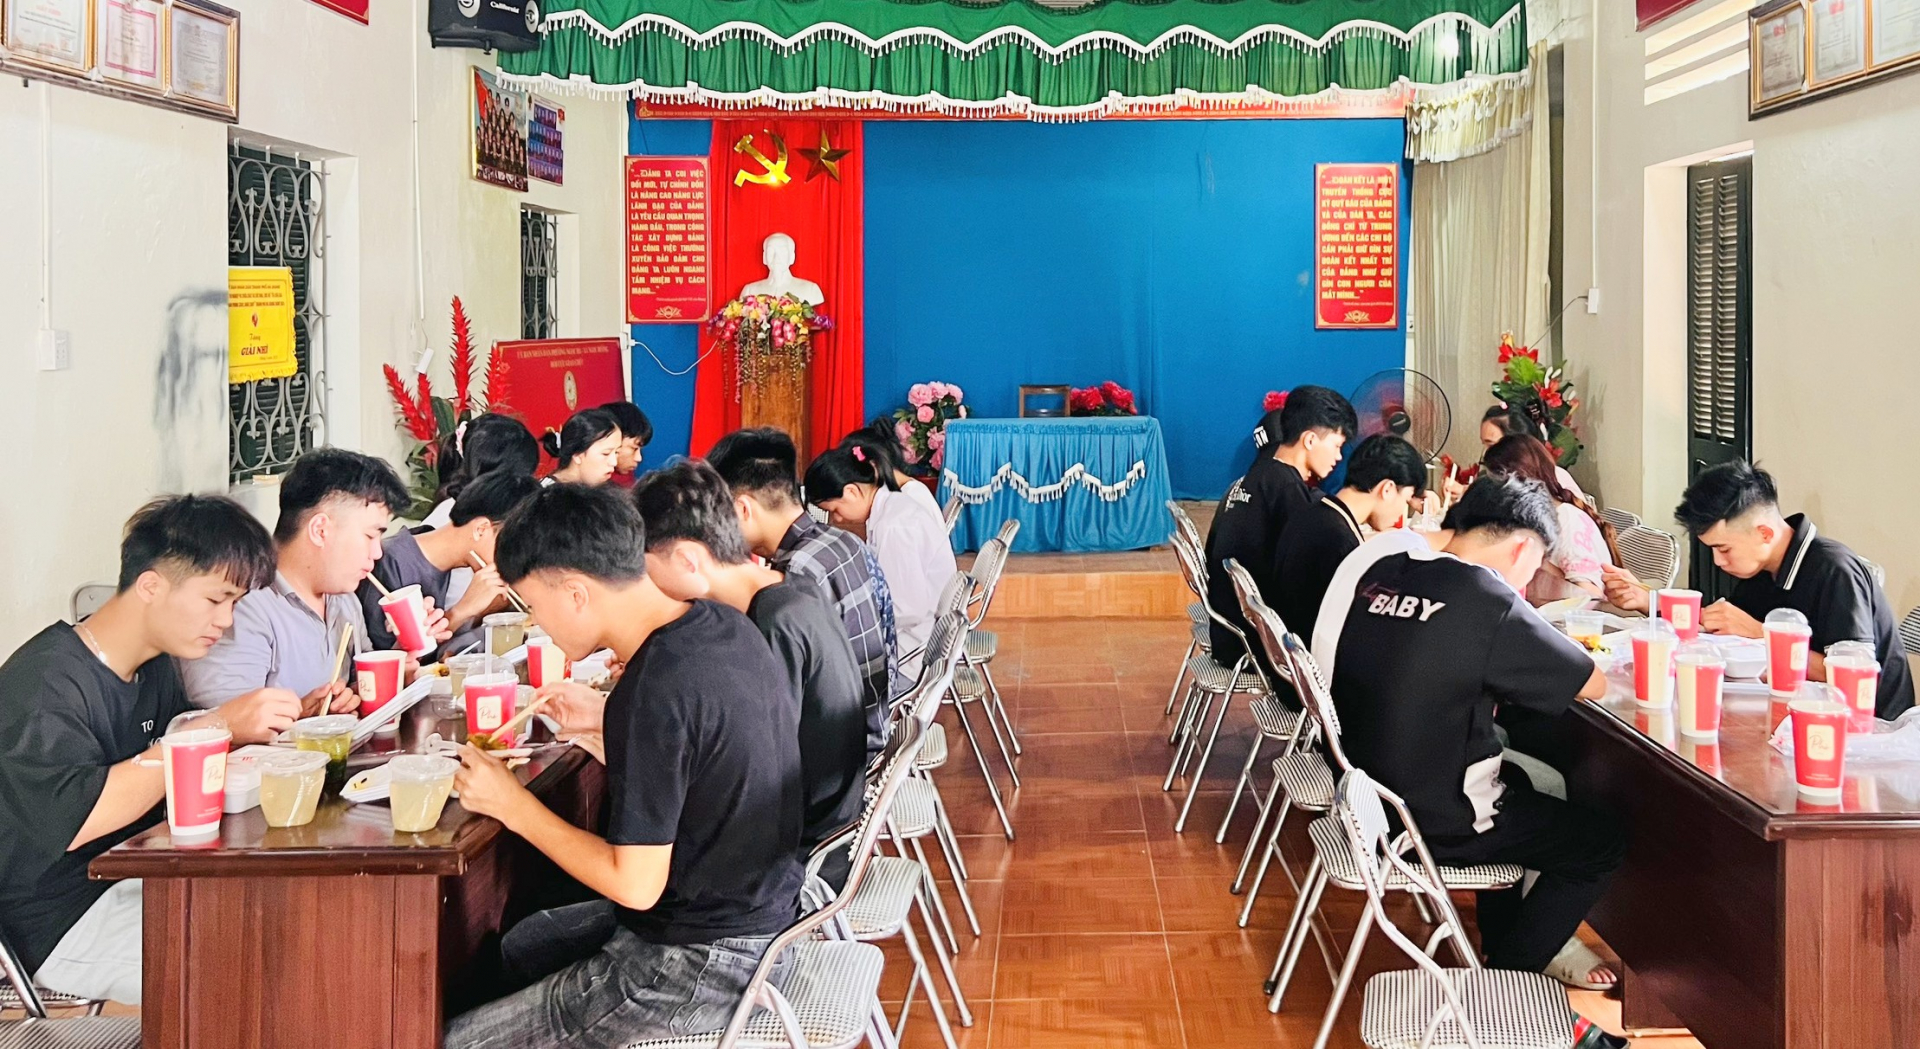 Bữa cơm trưa “0 đồng” dành cho thí sinh tại điểm thi Trường THPT Ngọc Hà, thành phố Hà Giang. Ảnh: Phạm Hoan